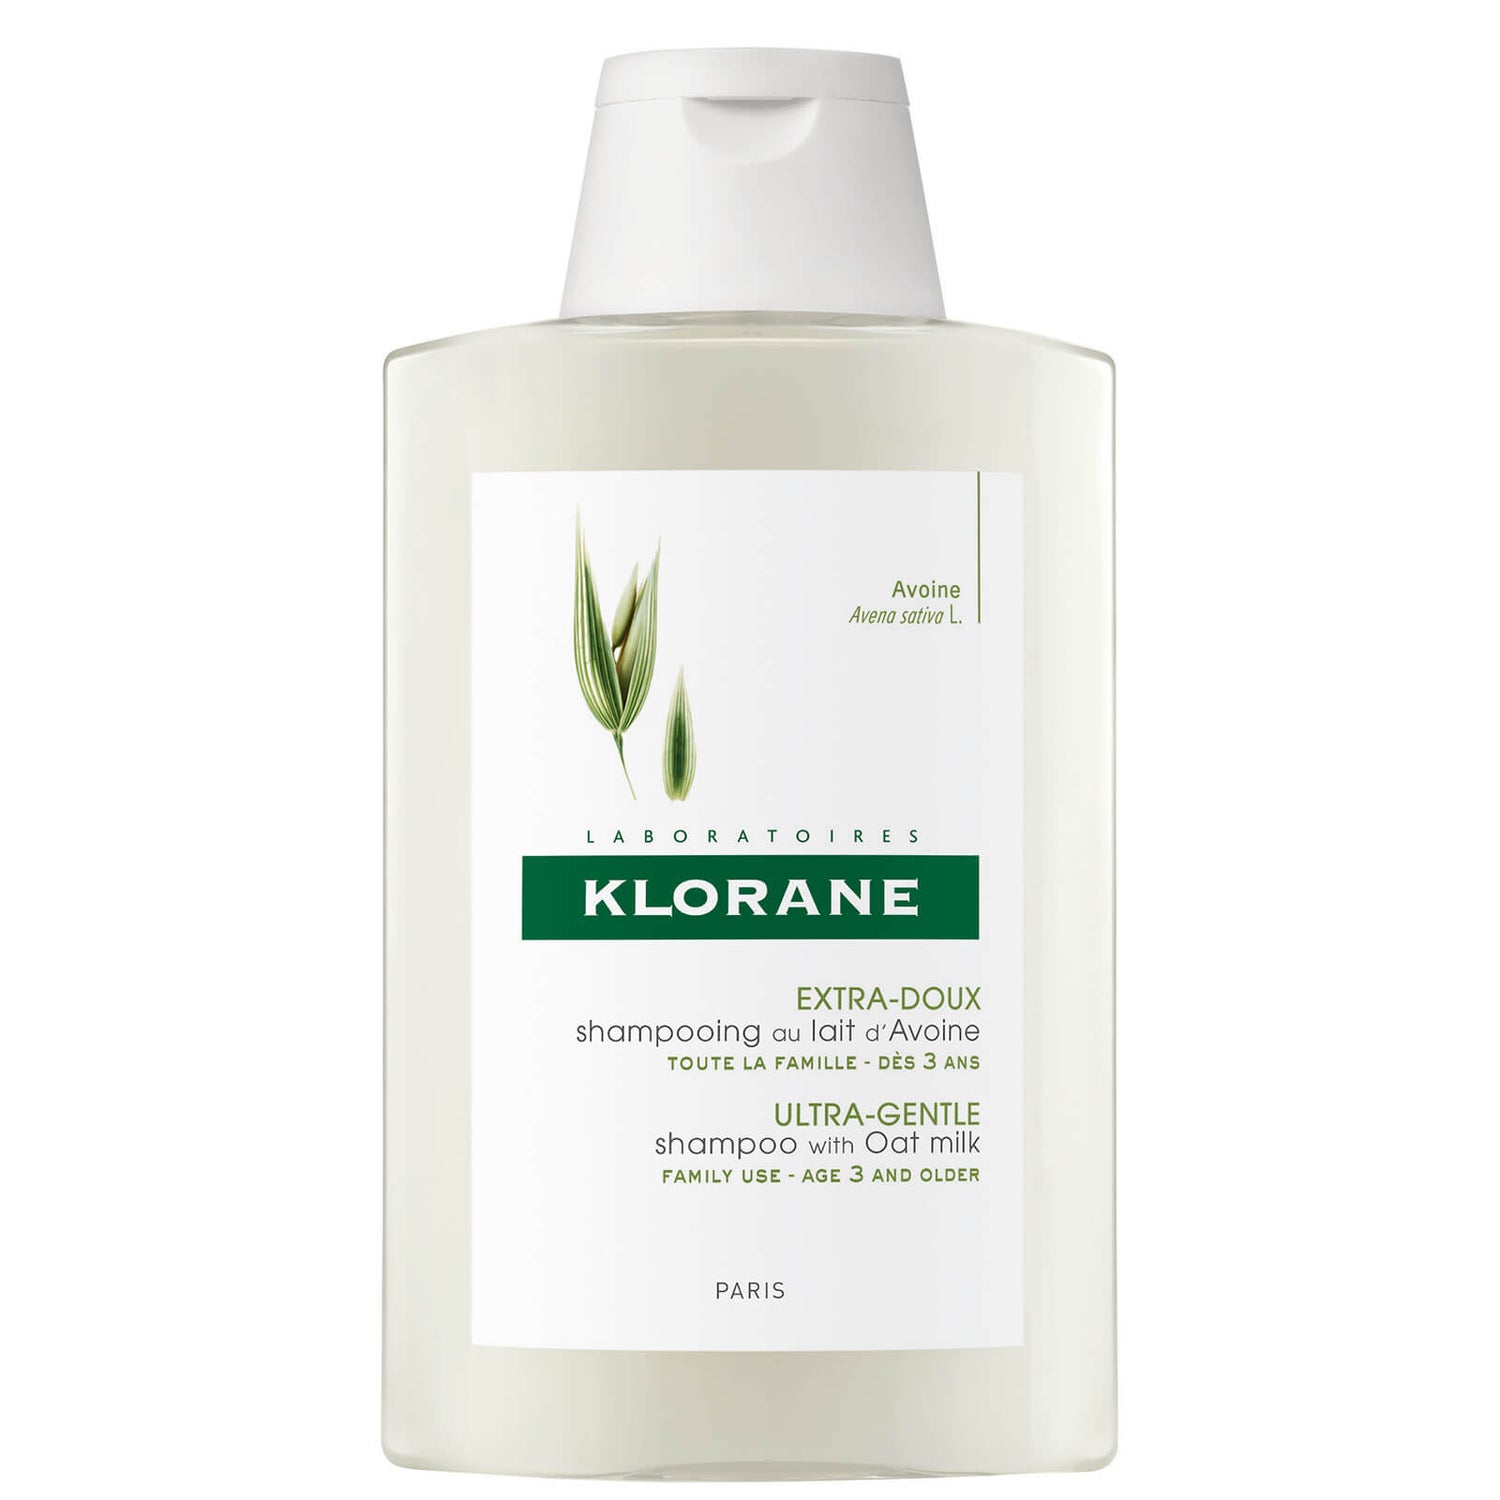 KLORANE Oat Milk Shampoo 200ml